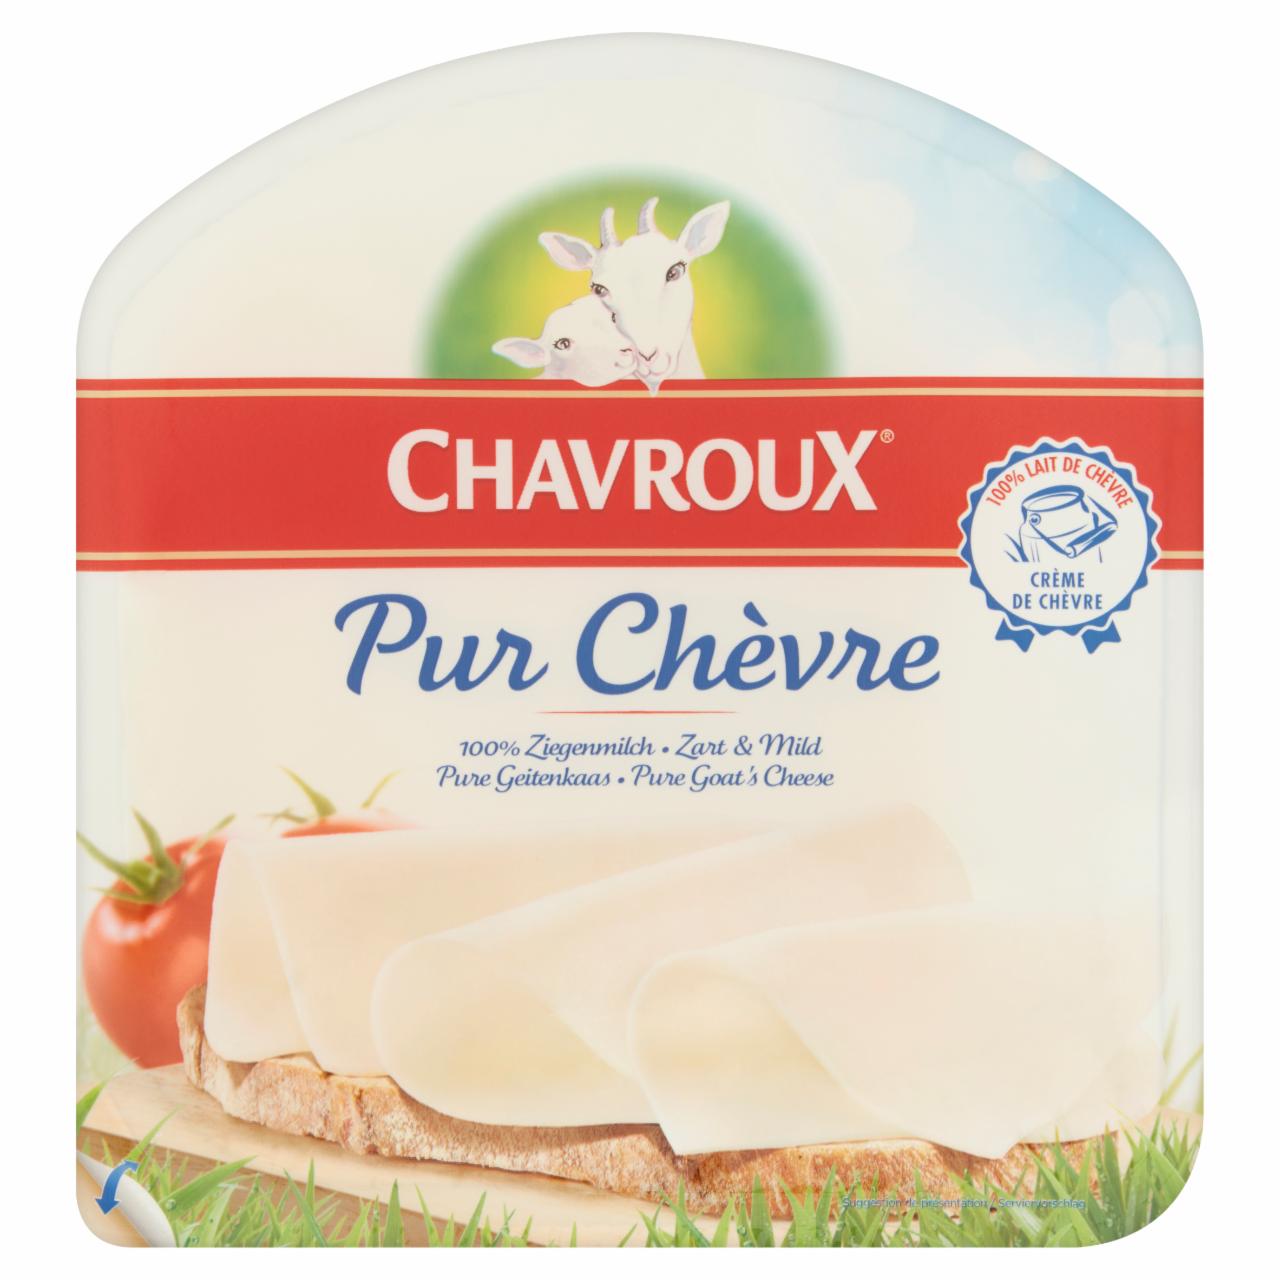 Zdjęcia - Chavroux Pur Chèvre Ser dojrzewający z mleka koziego w plastrach 120 g